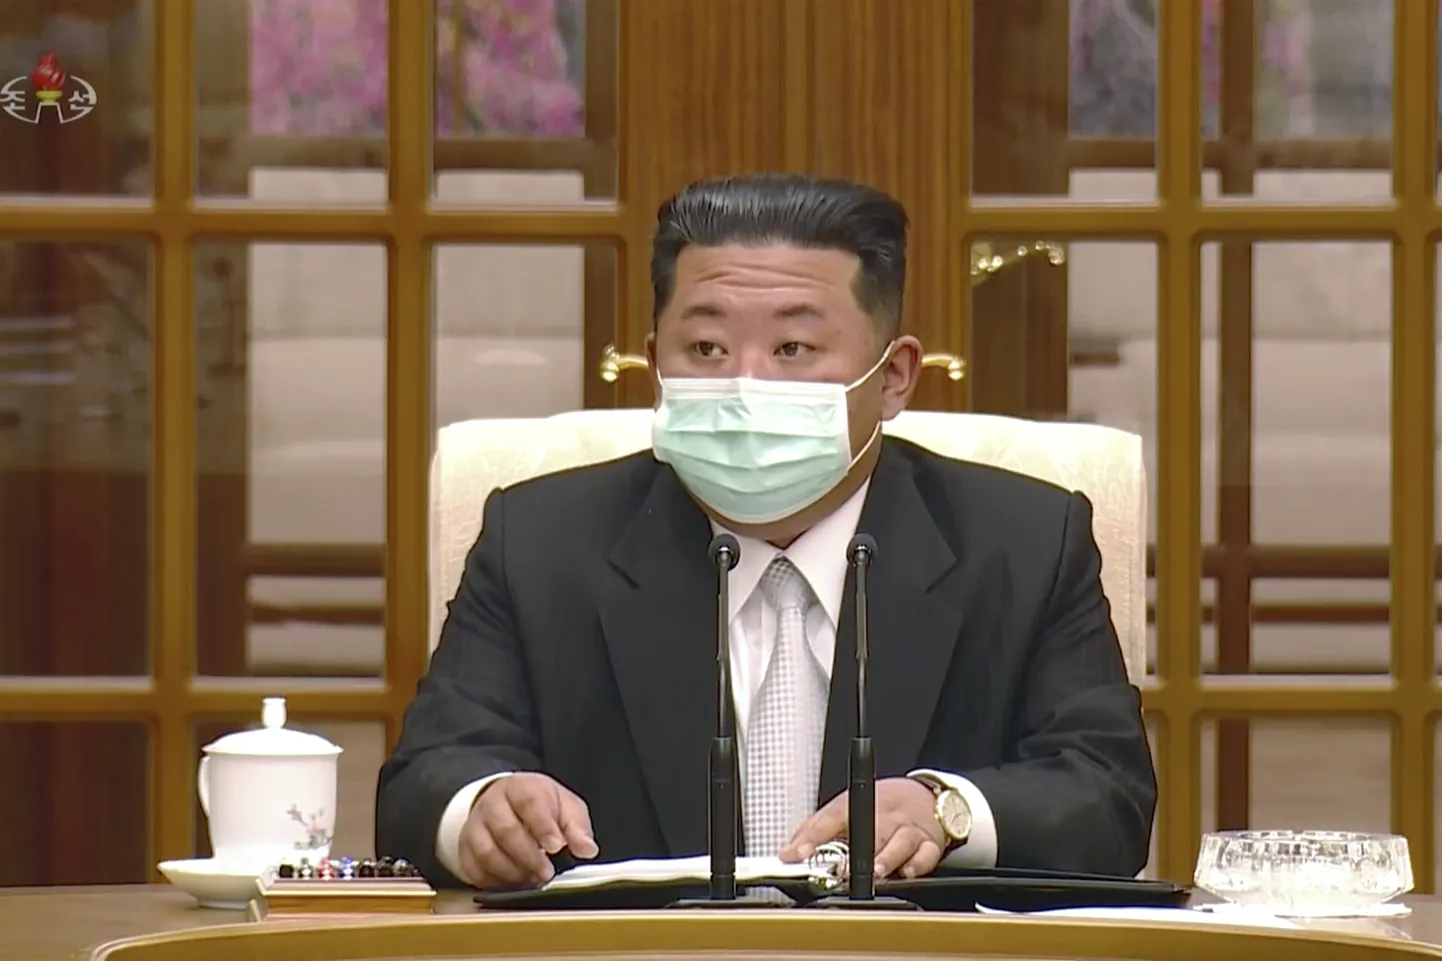 Põhja-Korea liider Kim Jong-un teatamas televisioonis riigi esimesest Covidi juhtumist.